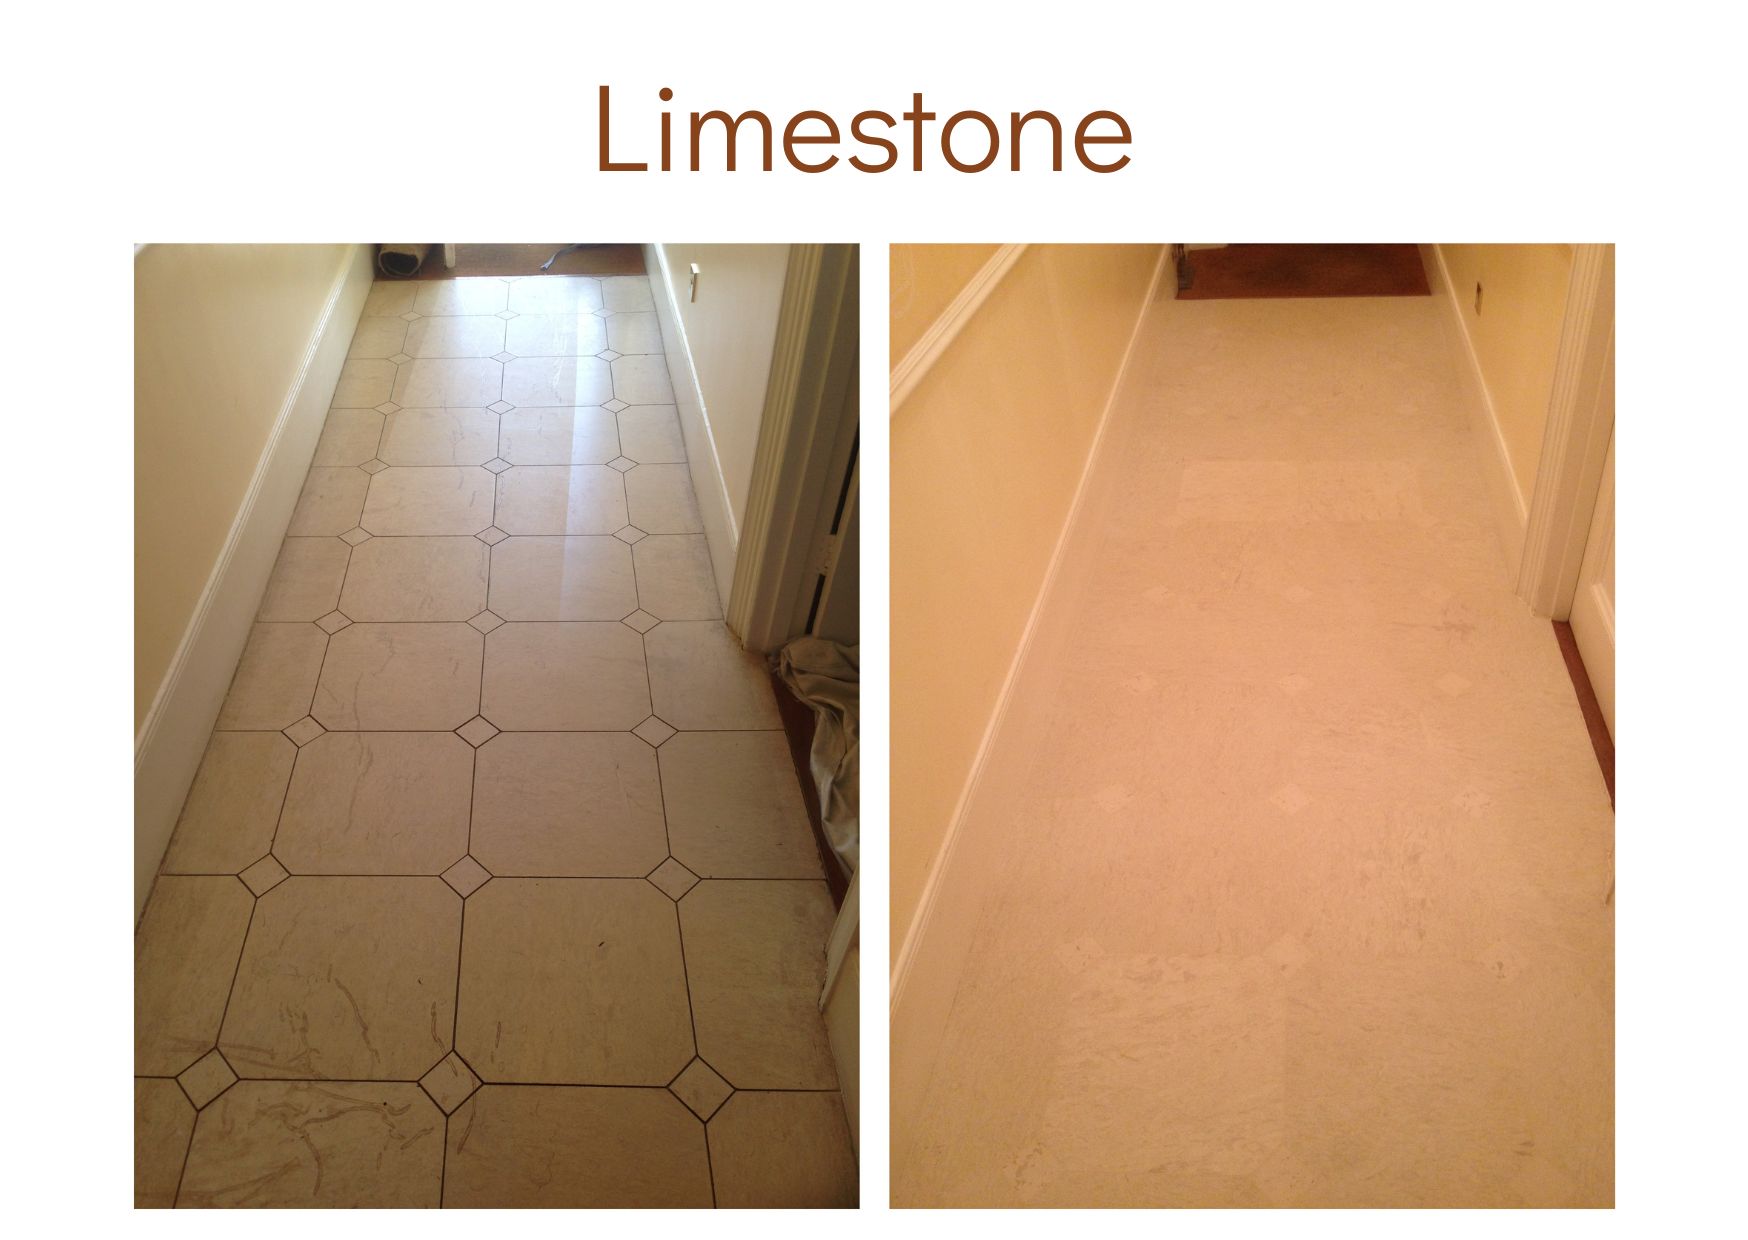 Limestone cleaned